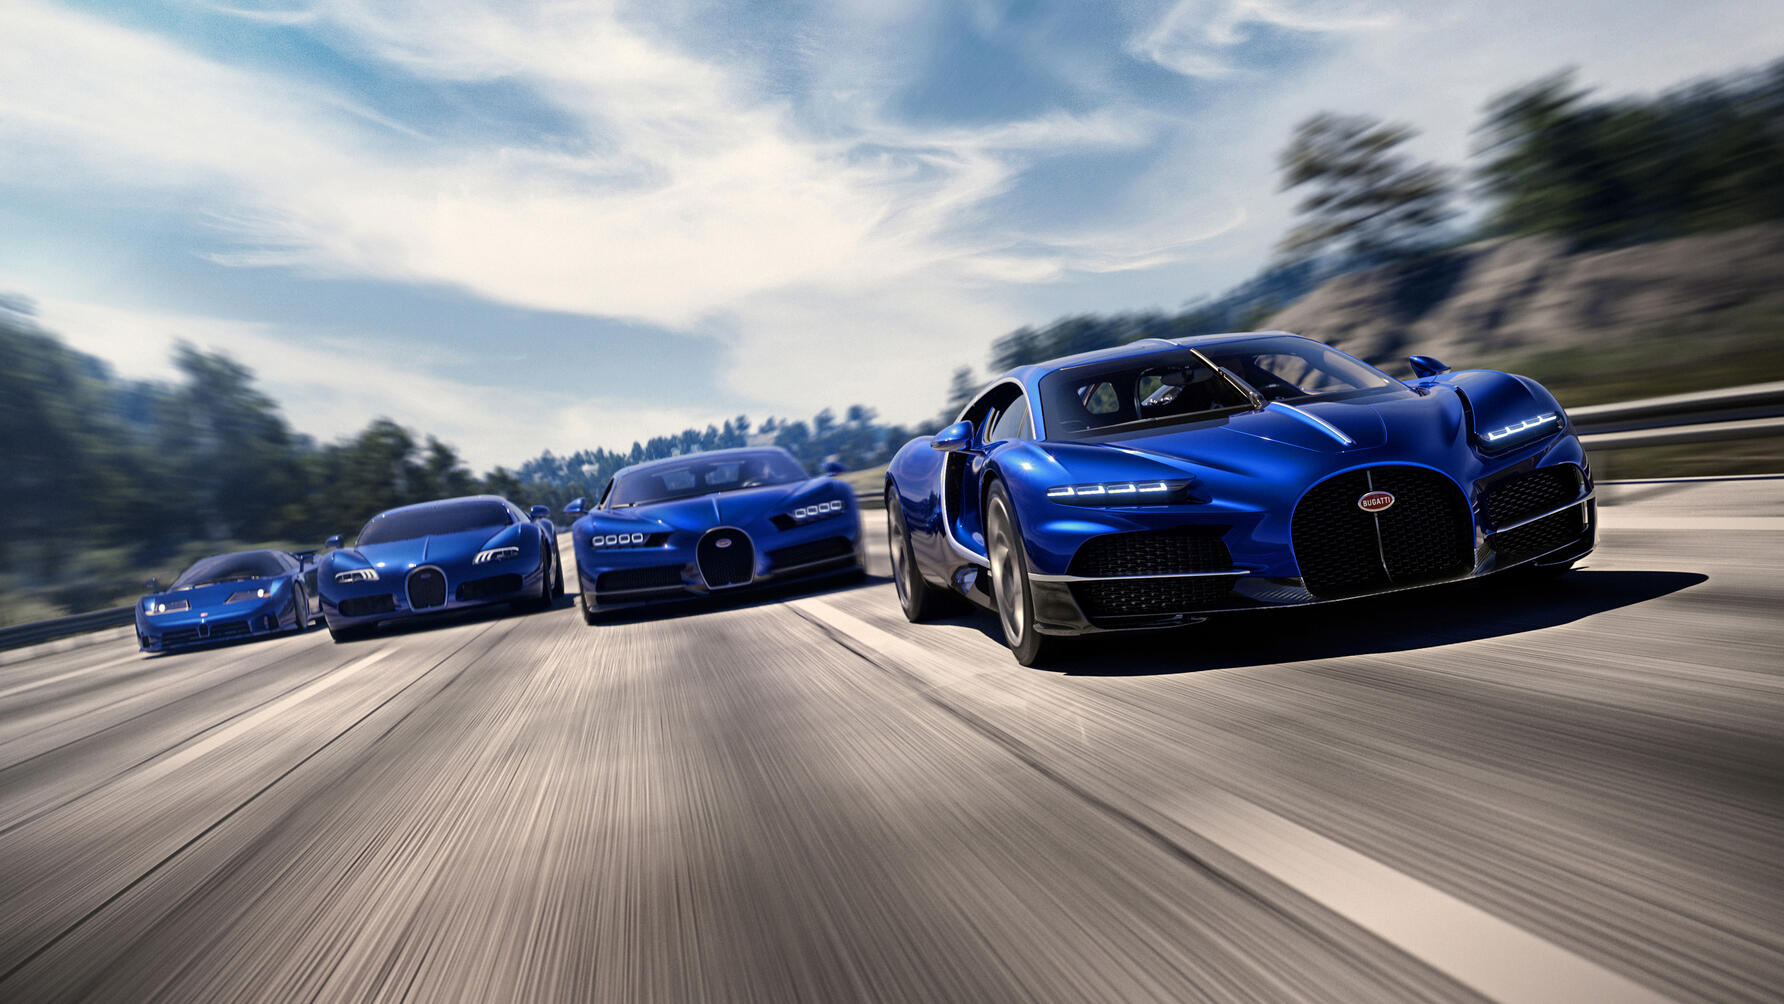 Her har Bugatti samlet flere av sine kreasjoner. Fra venstre: Bugatti EB110, Bugatti Veyron, Bugatti Chiron og nyeste Bugatti Tourbillon